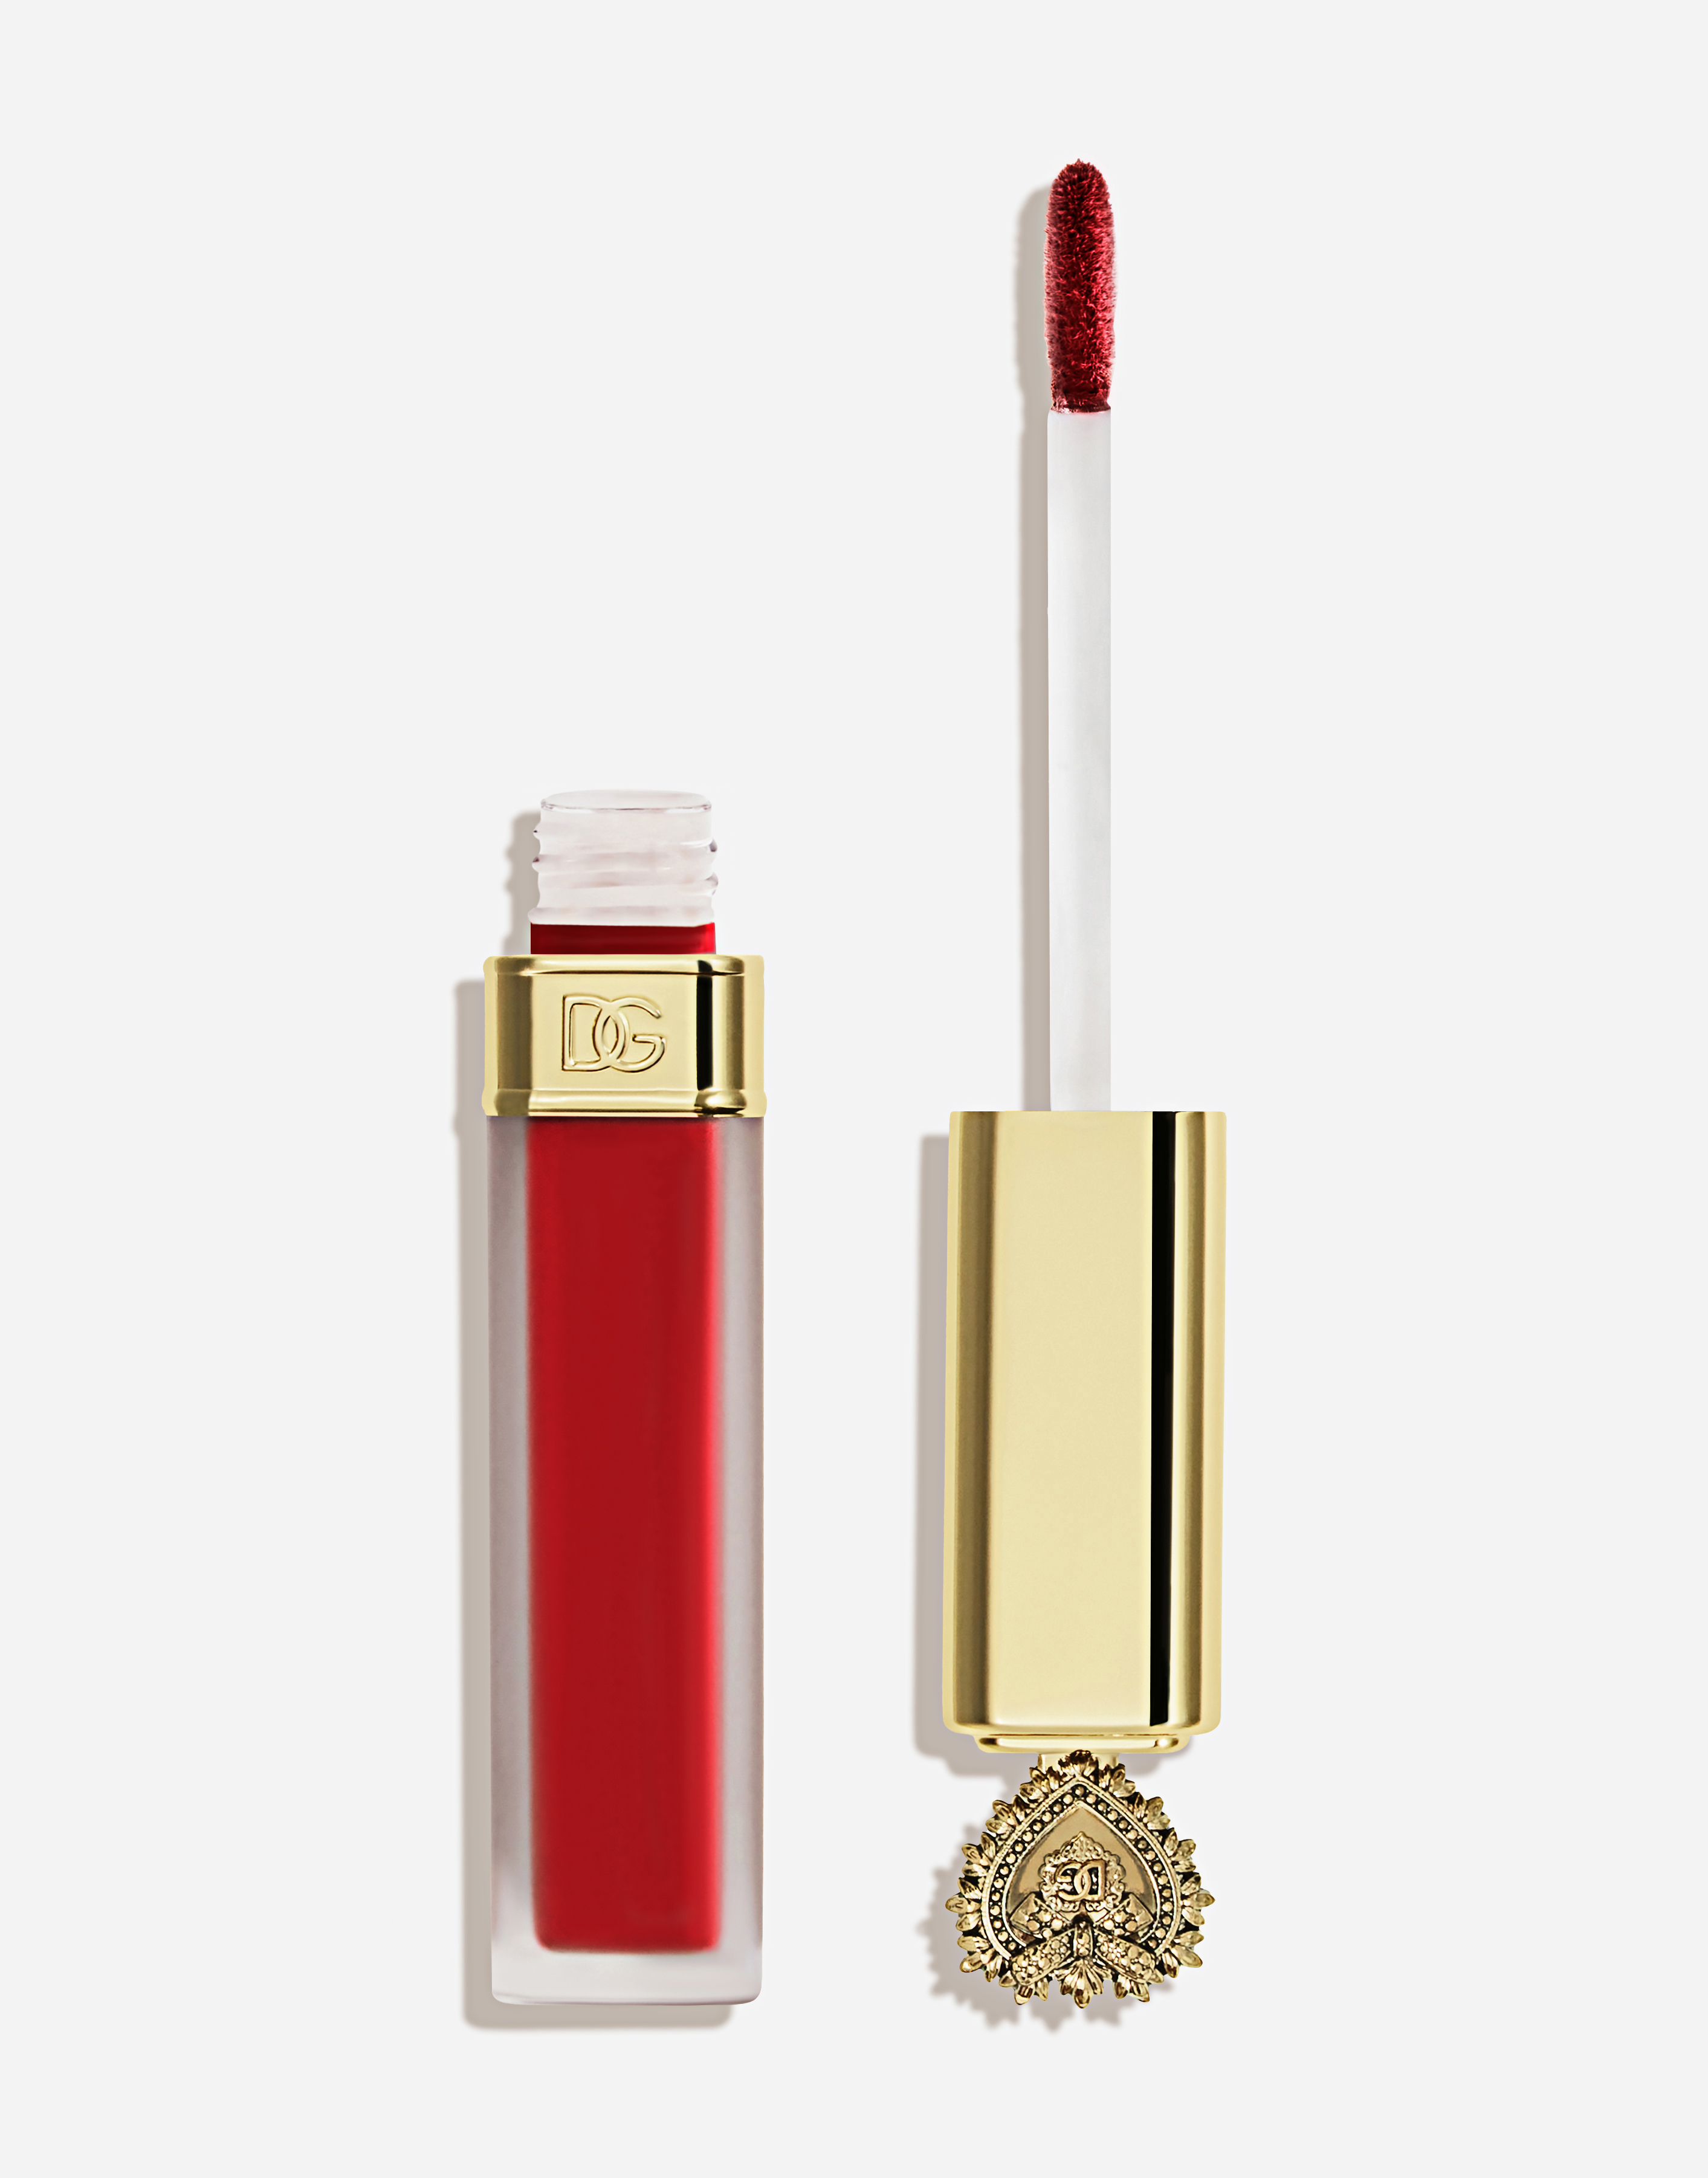 Dolce & Gabbana Devotion Liquid Lipstick In Mousse In 405 Devozione